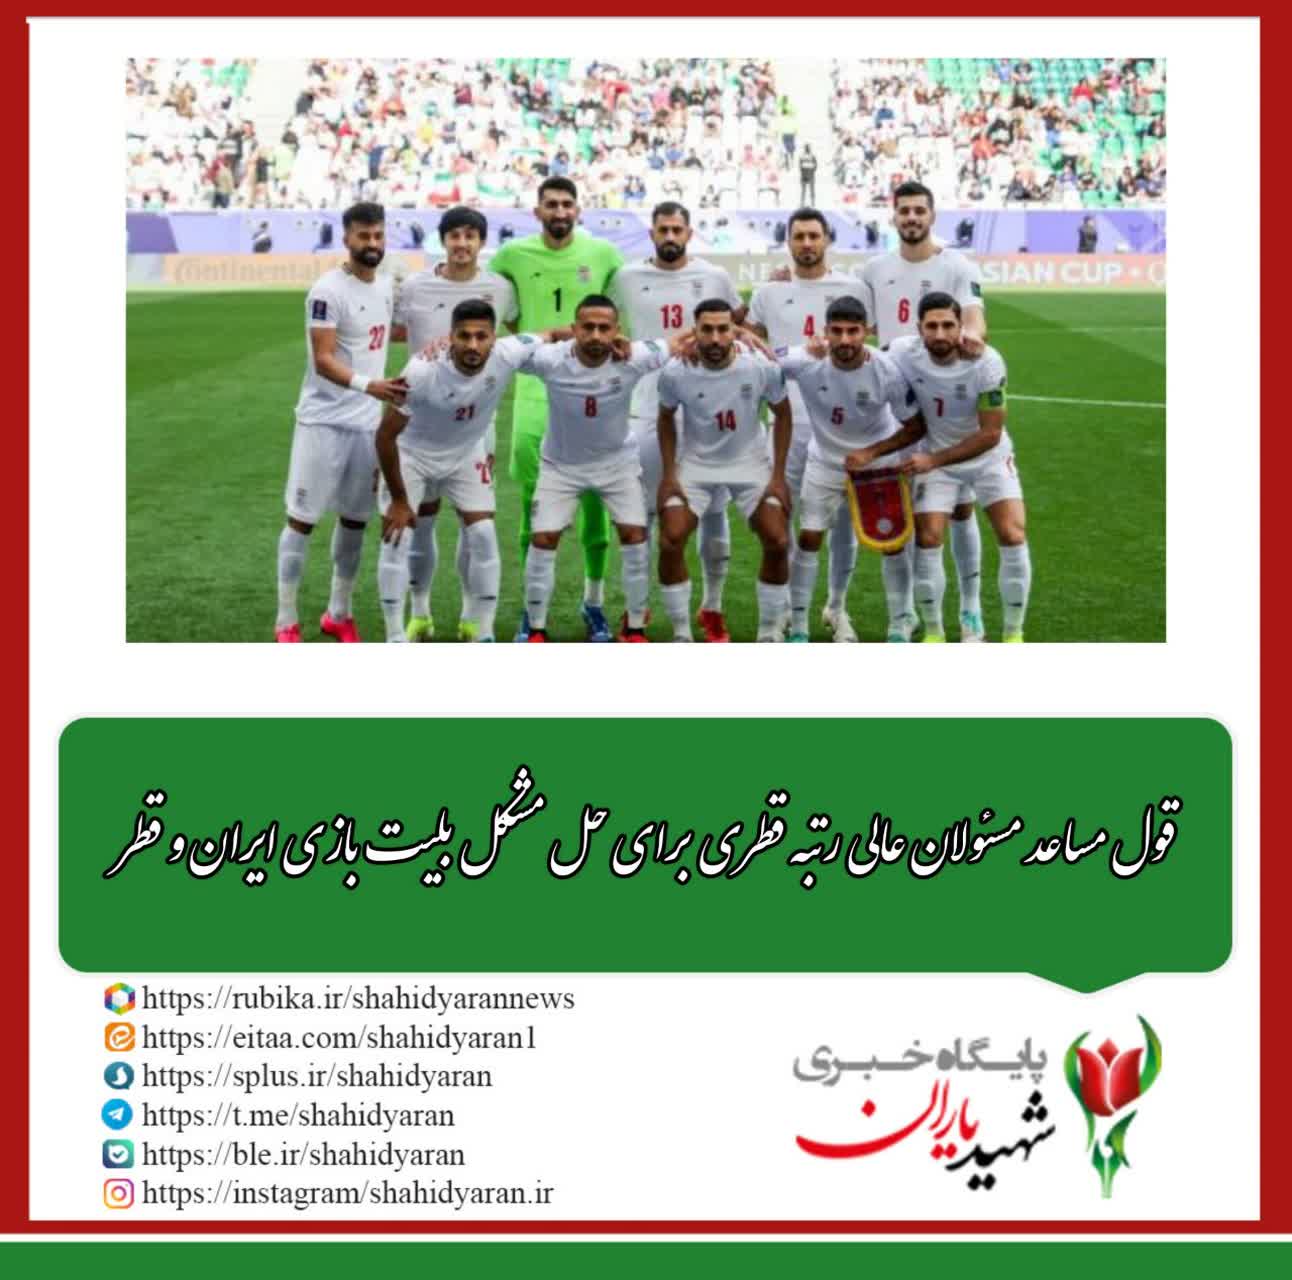 مسئول کانون هواداران اعزامی به قطر تیم ملی فوتبال ایران خبر داد: